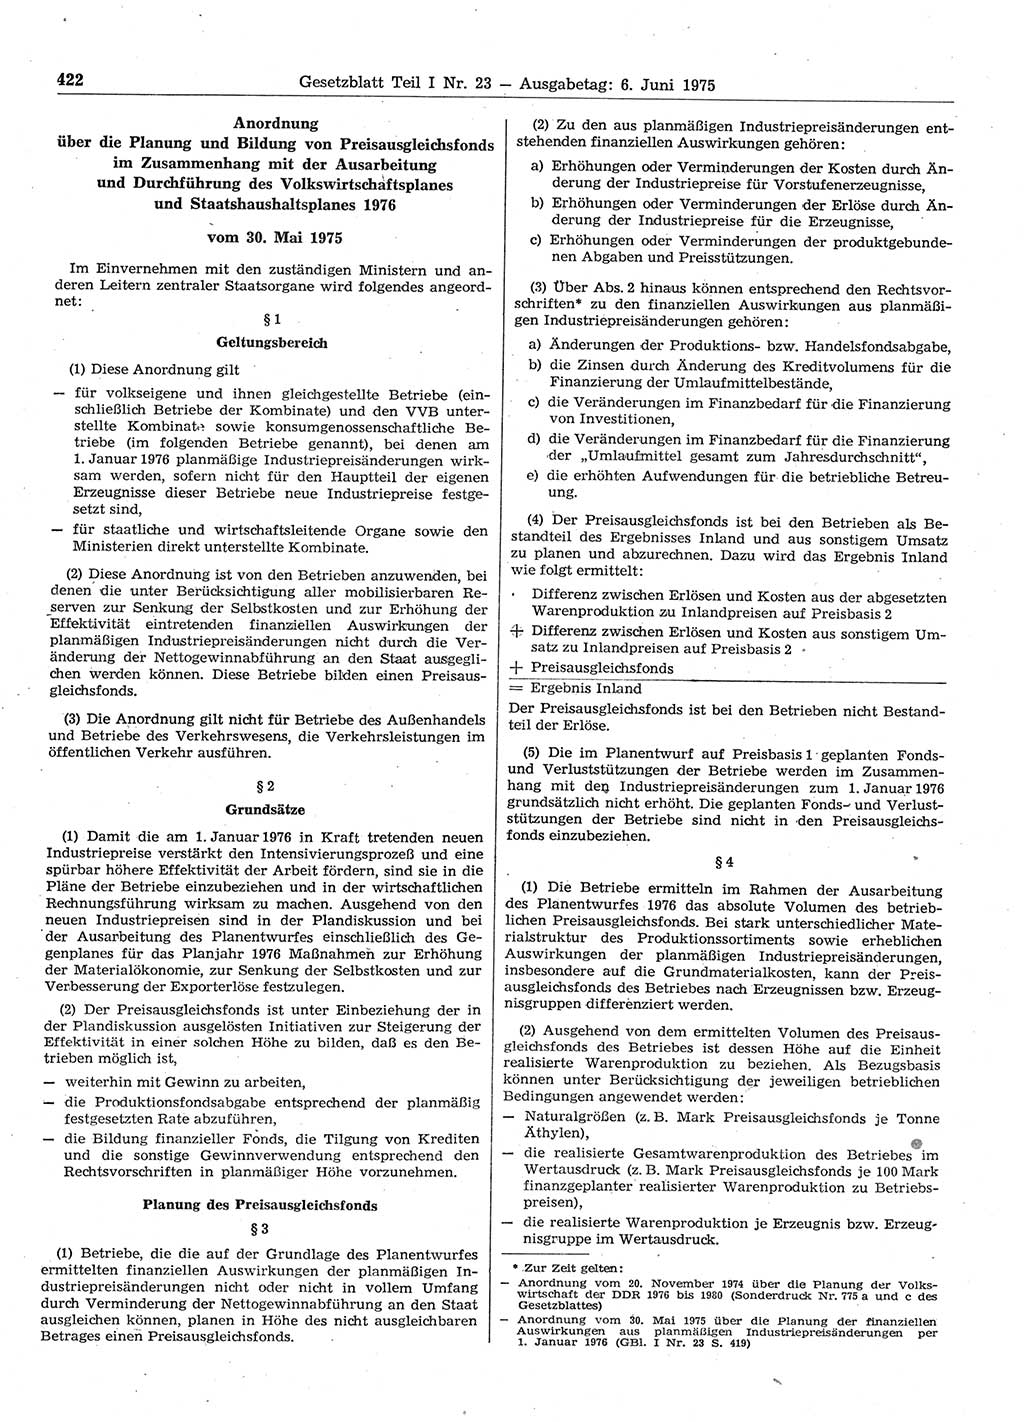 Gesetzblatt (GBl.) der Deutschen Demokratischen Republik (DDR) Teil Ⅰ 1975, Seite 422 (GBl. DDR Ⅰ 1975, S. 422)